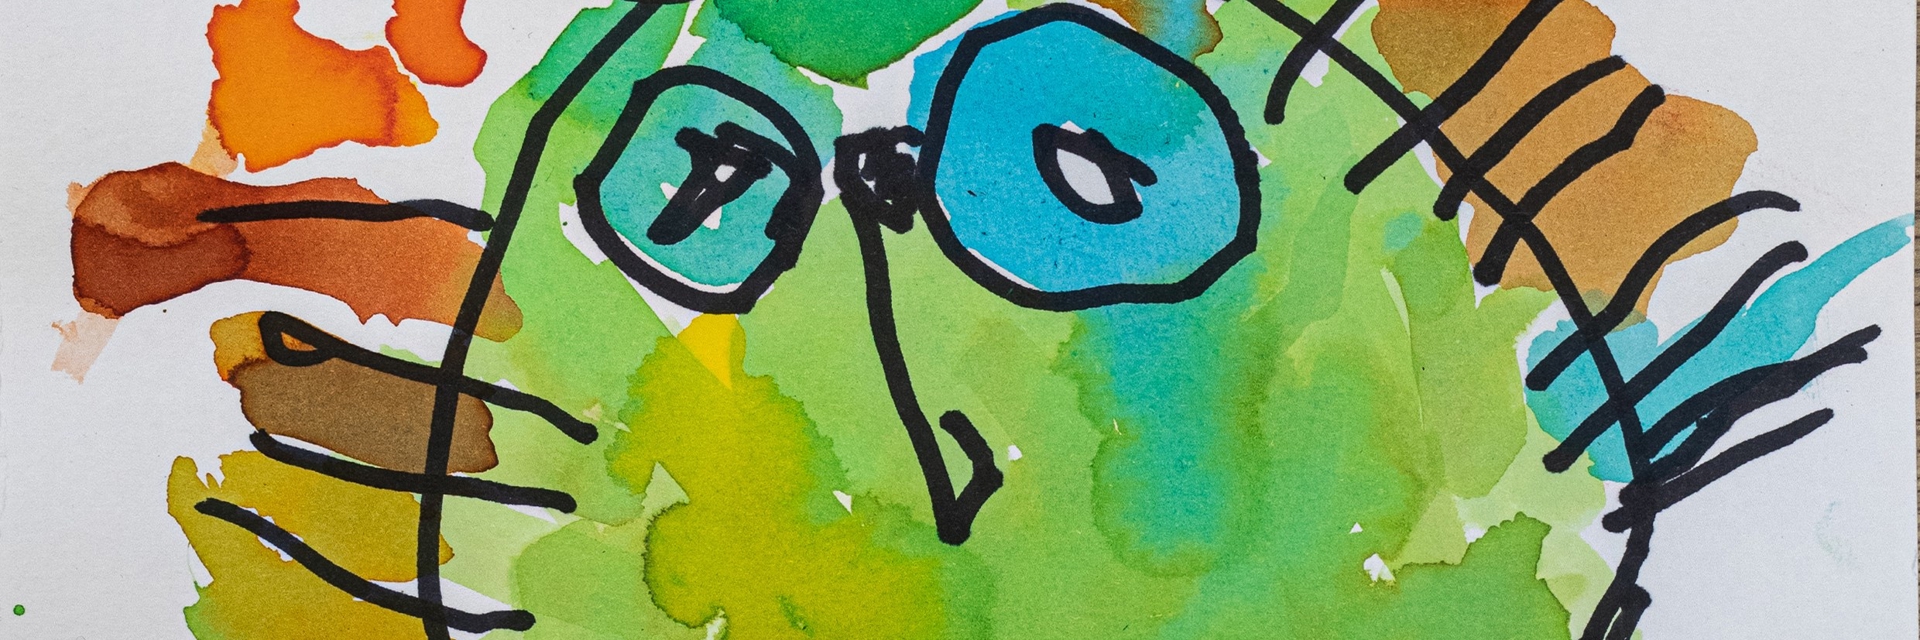 Børnetegning fra Alfehuset i Næstved Kommune. Tegningen er et grønt ansigt, med mangefarvet hår. Baggrunden er blå.